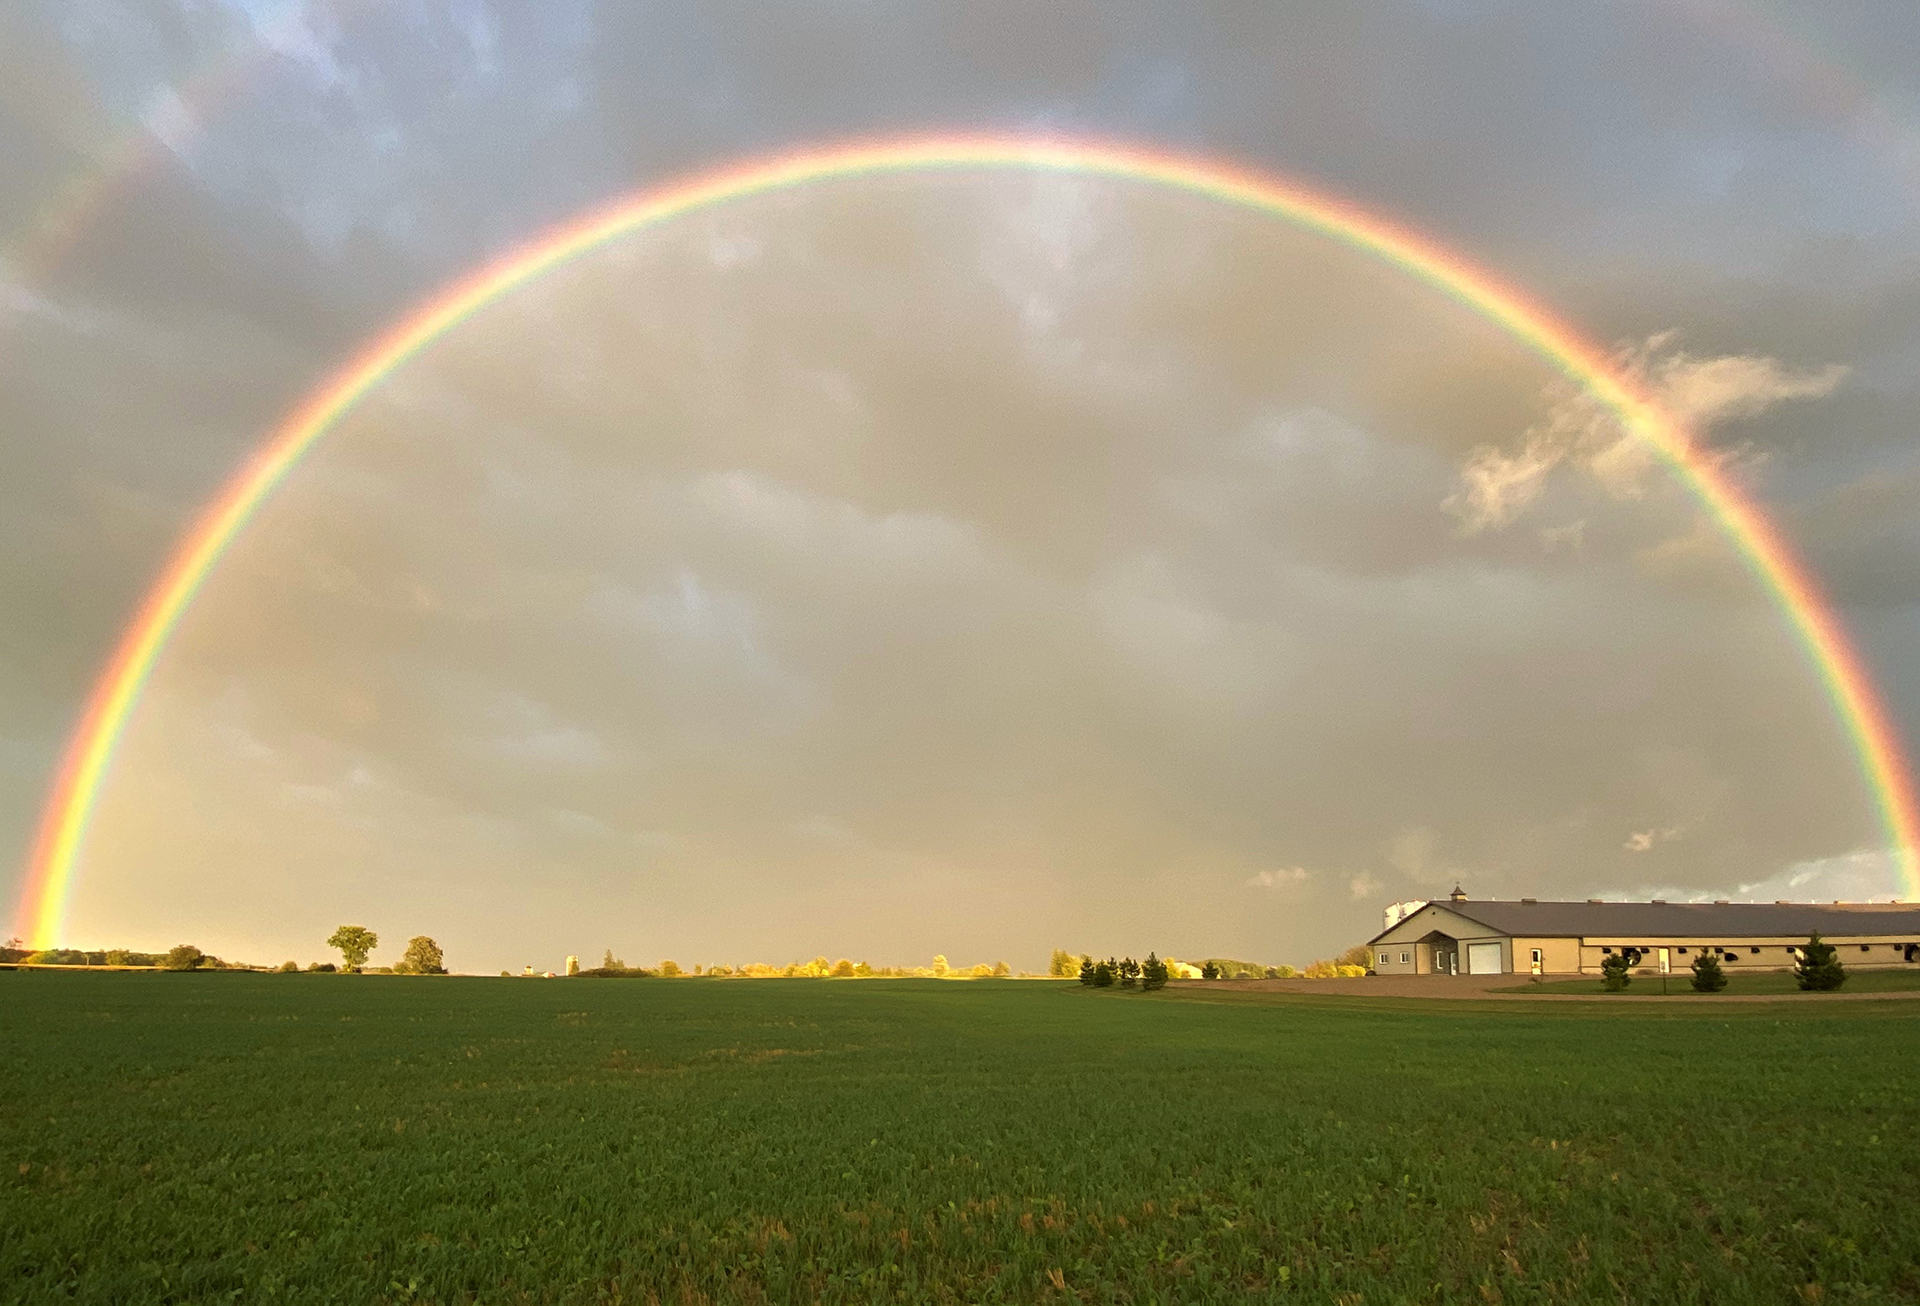 A full rainbow over a farm field